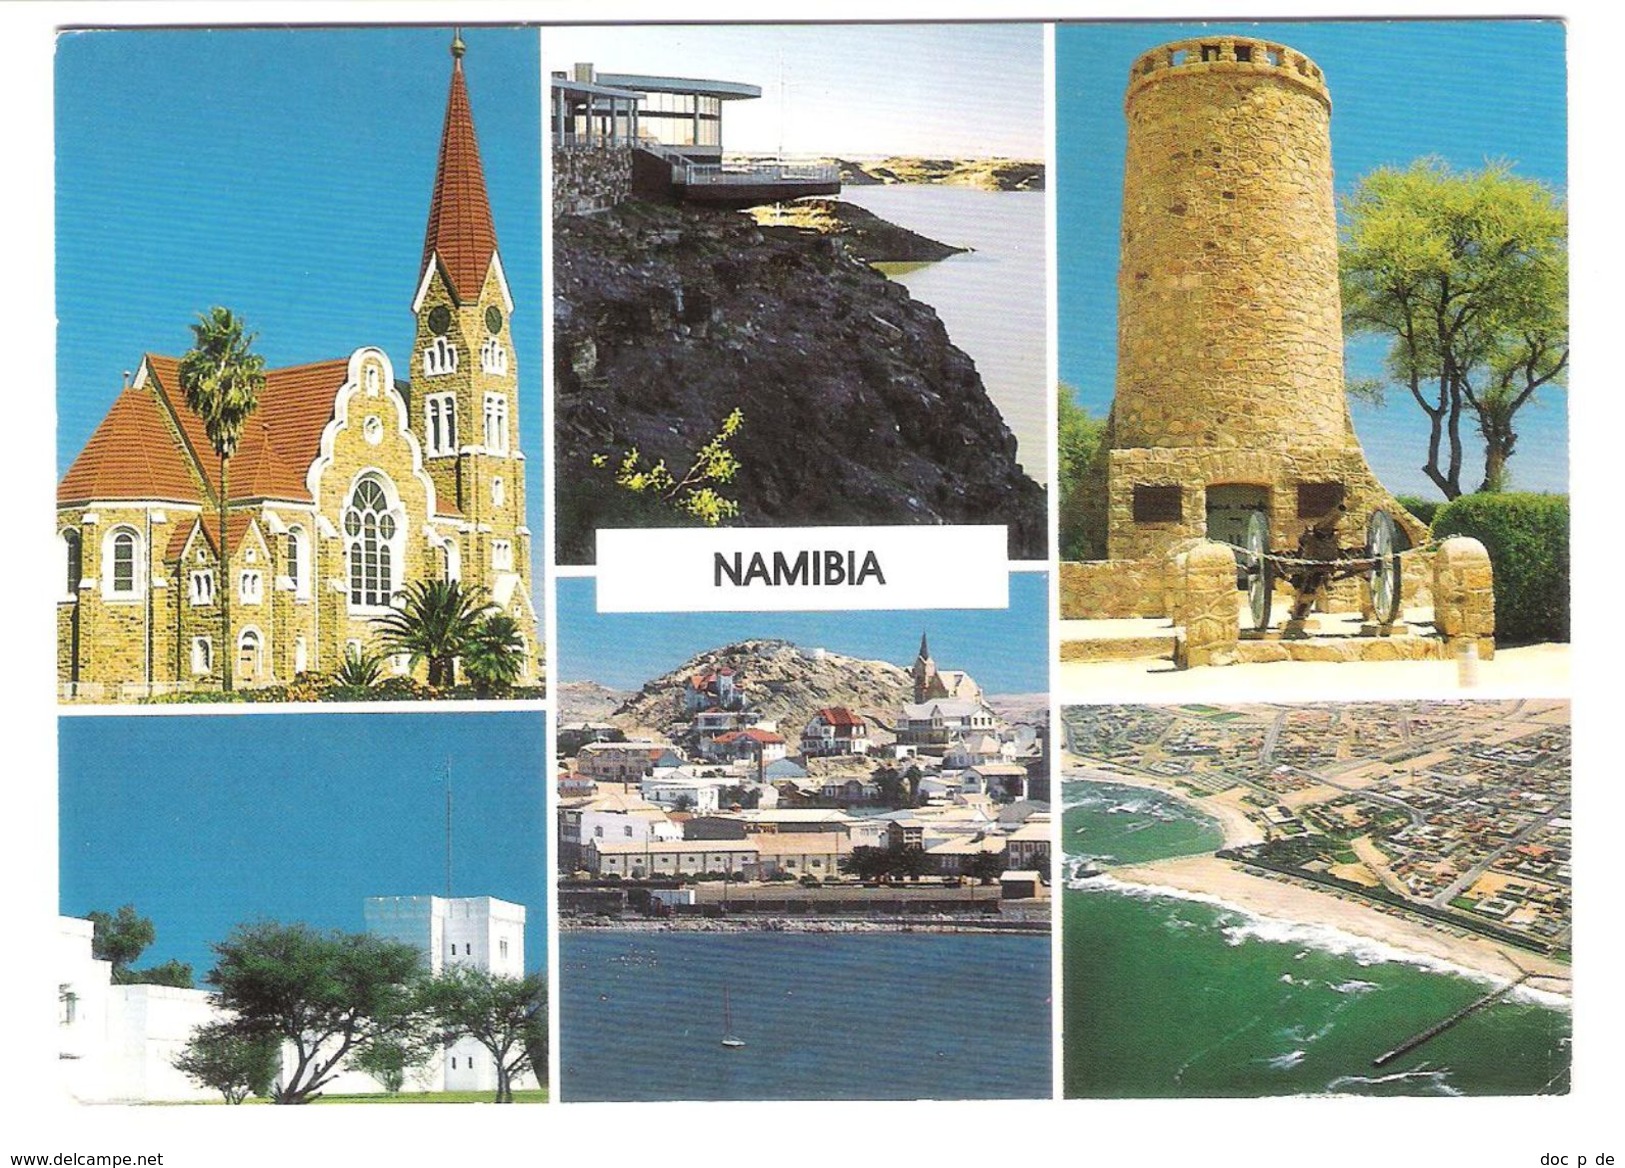 Namibia - Views - German Lutheran Church - Namibie